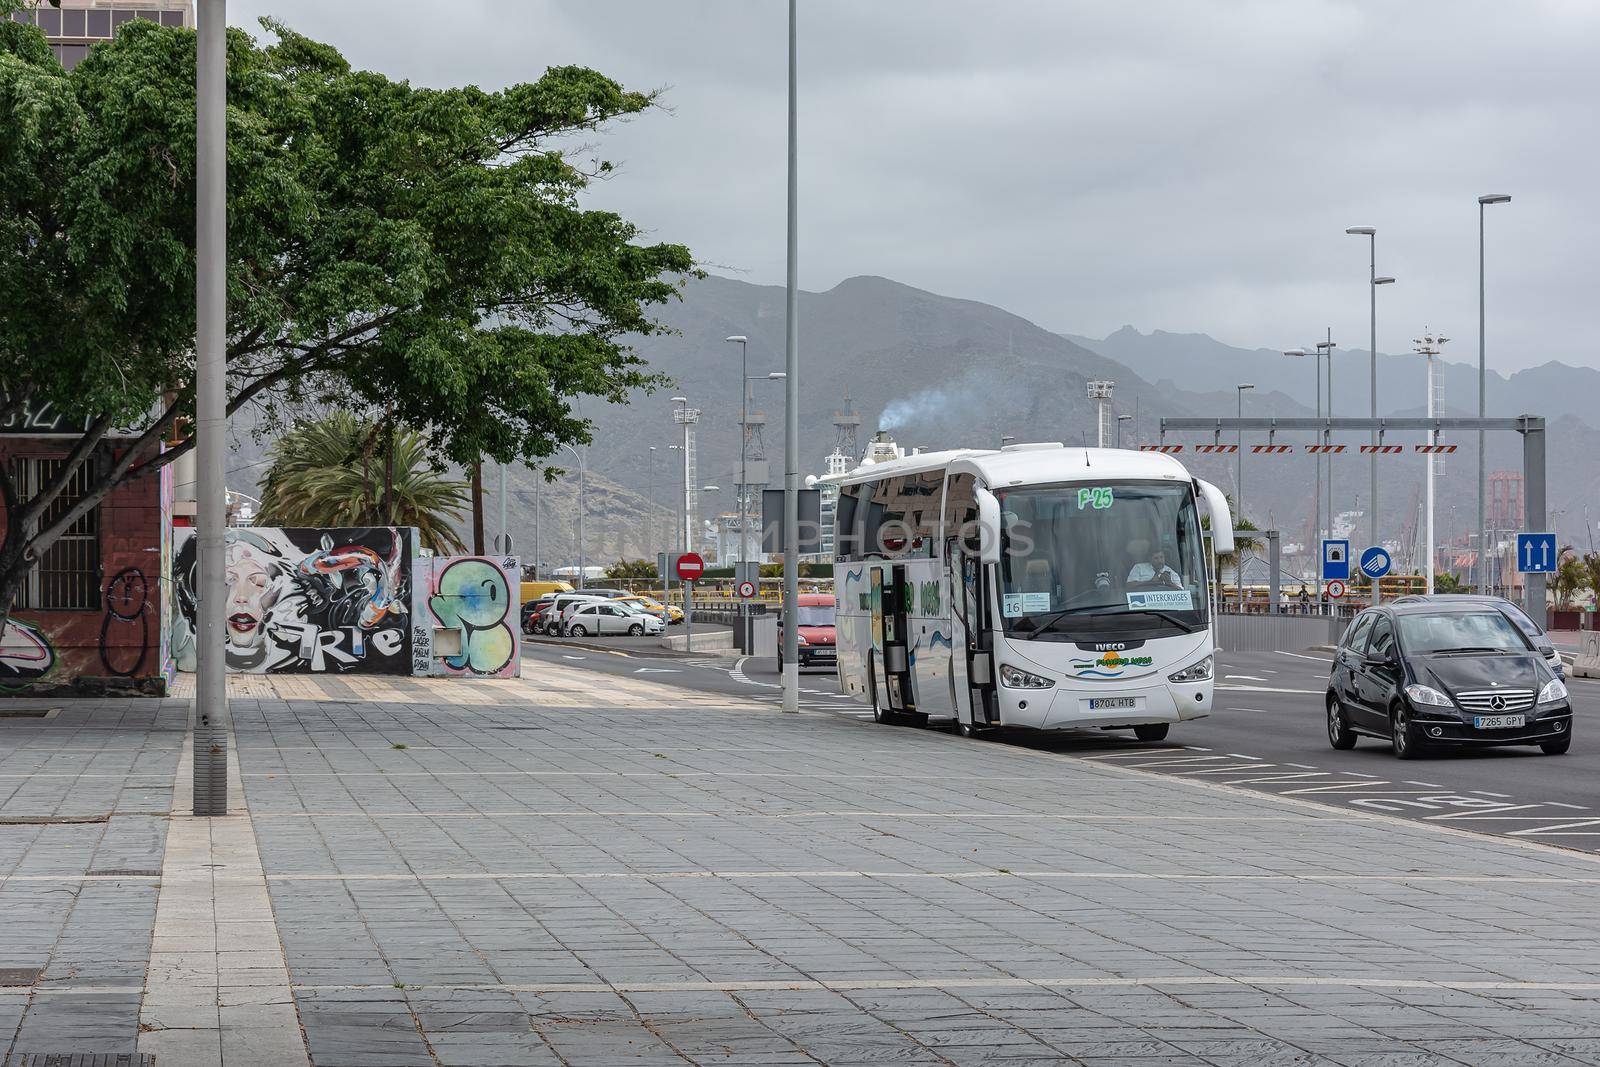 Santa Cruz de Tenerife, Spain - 05/13/2018: tourist bus, stock photo